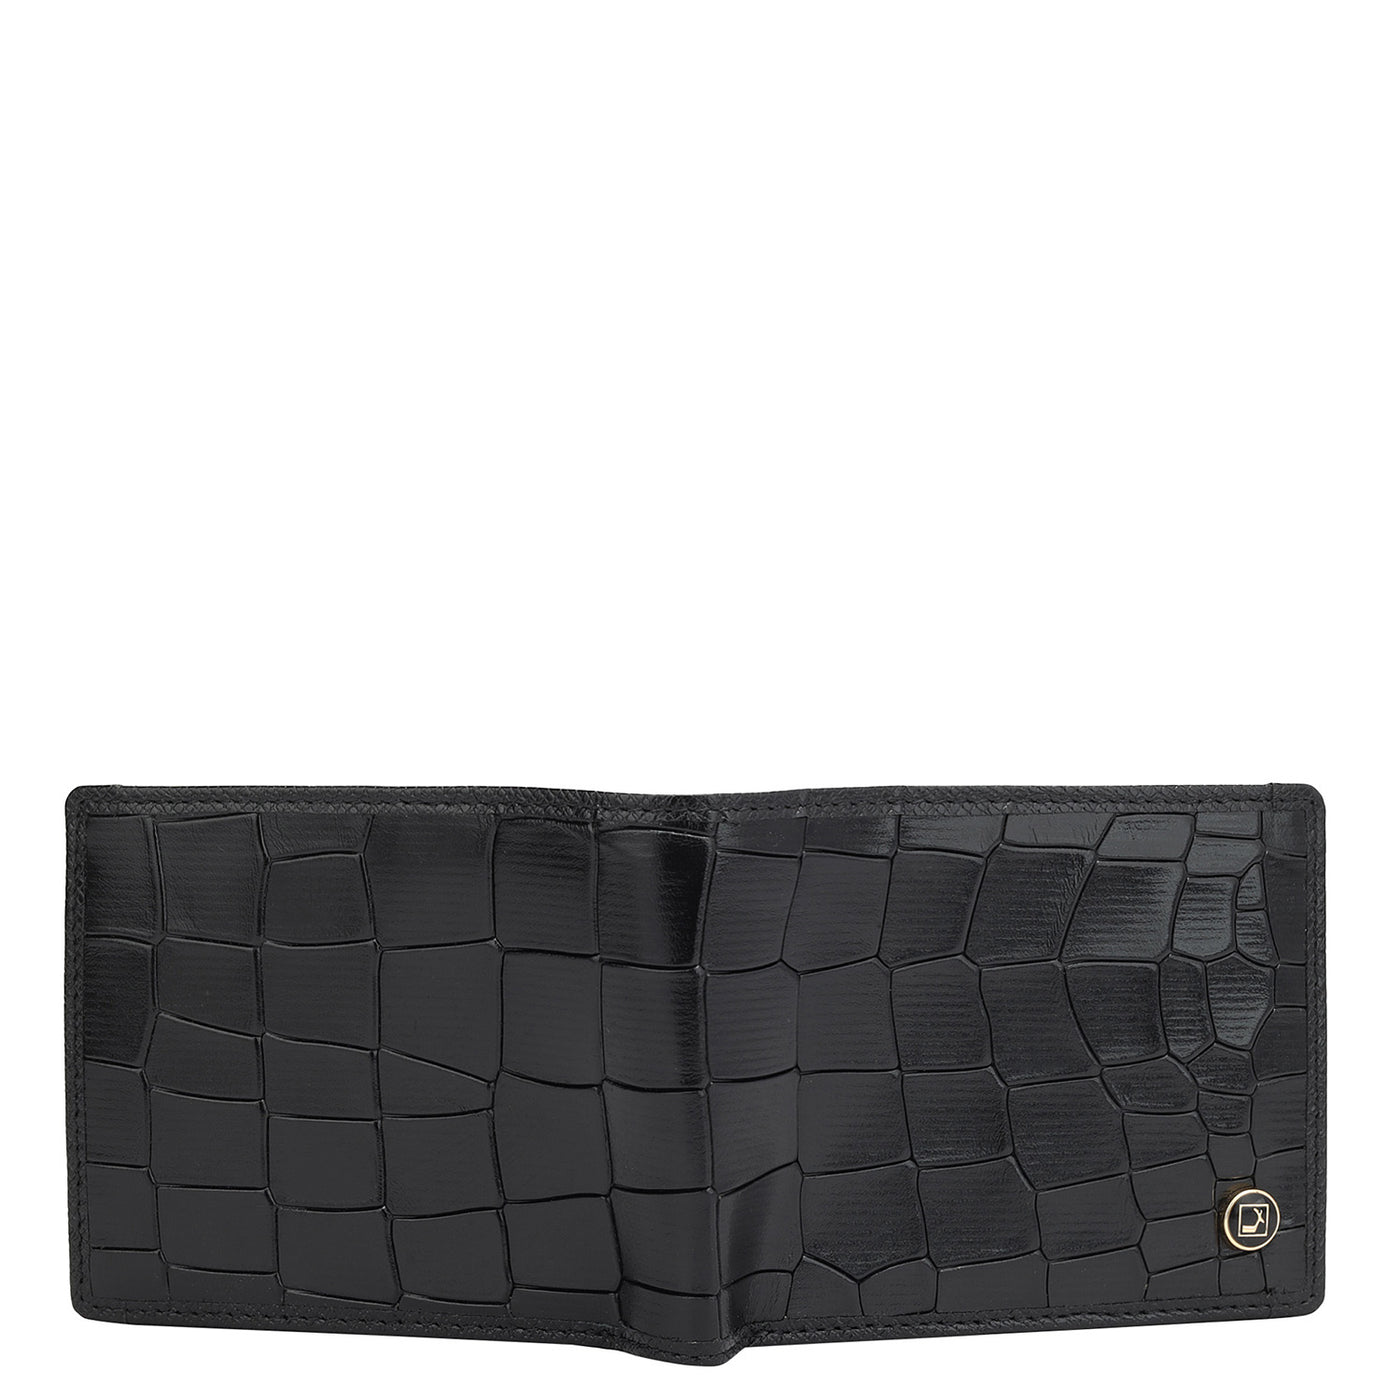 Black Croco Leather Mens Wallet & Belt Gift Set